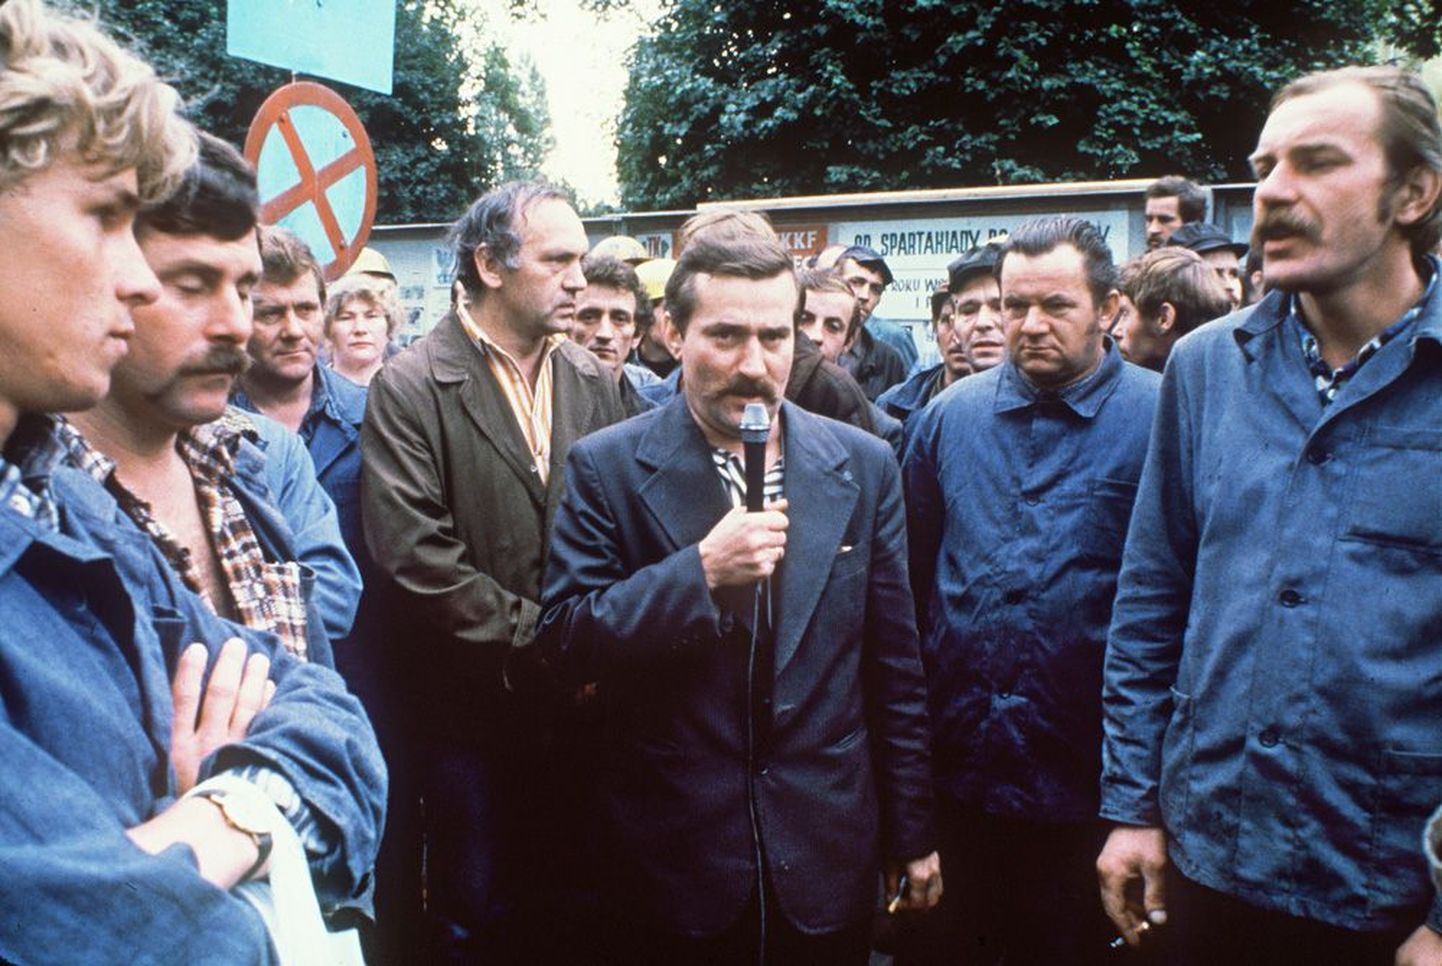 Лех Валенса (с микрофоном) 30 августа 1980 года в Гданьске на судоверфи имени Ленина передает рабочим сообщение о том, как идут переговоры профсоюзов с коммунистическим правительст­вом Польши. 18-дневная забастовка кораблестроителей на следующий день завершилась победой «Солидарности».